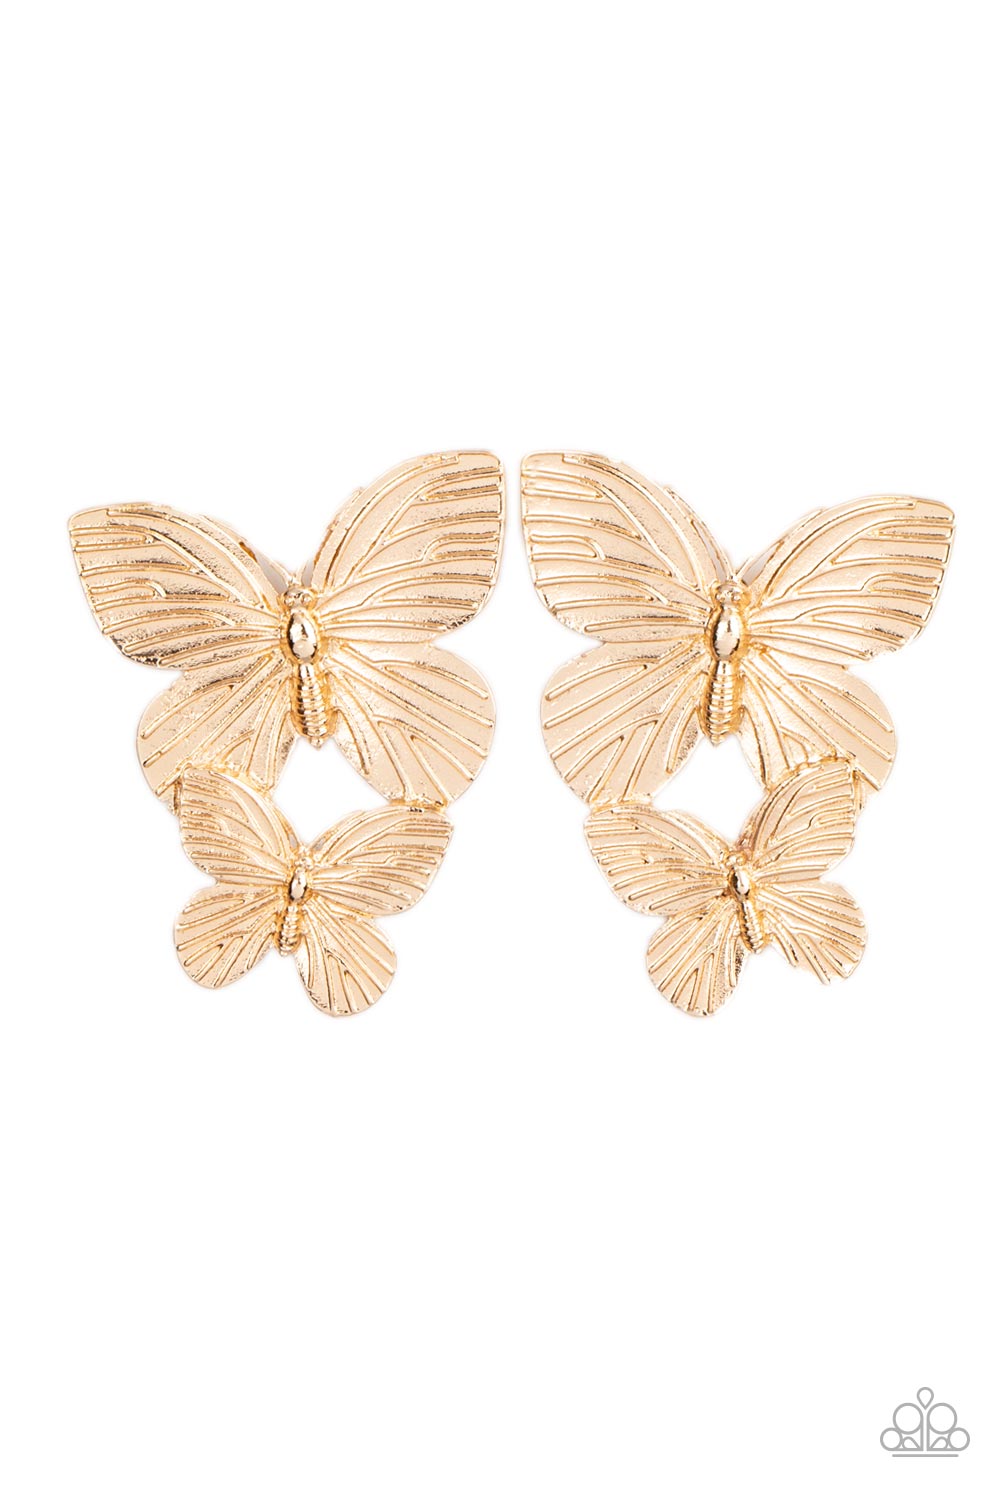 Blushing Butterflies - gold - Paparazzi earrings